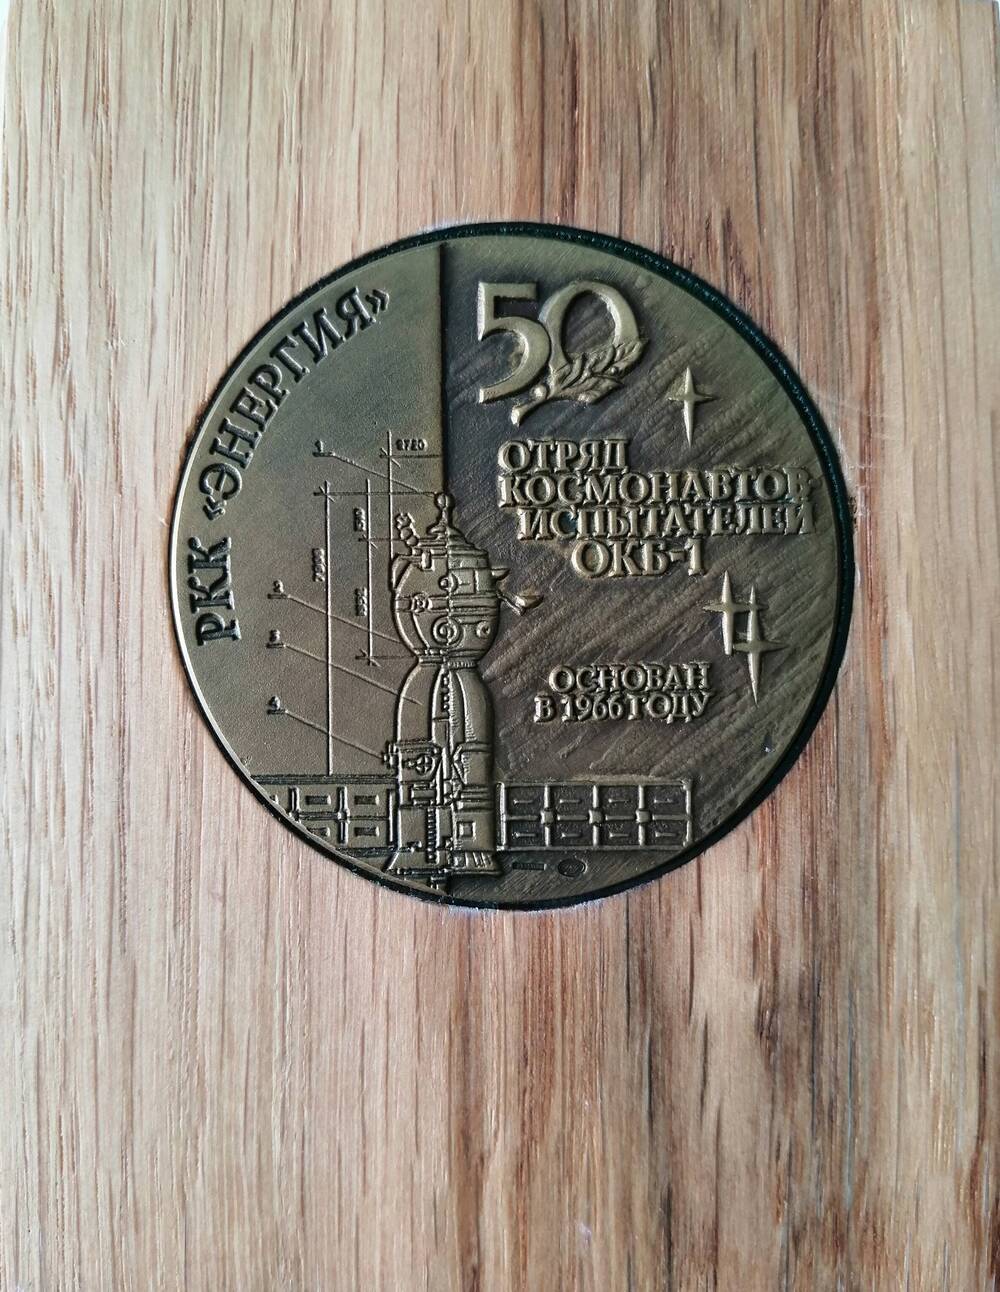 Медаль памятная 50 лет отряду космонавтов-испытателей ОКБ-1 № 111 Шаповаловой В.П.